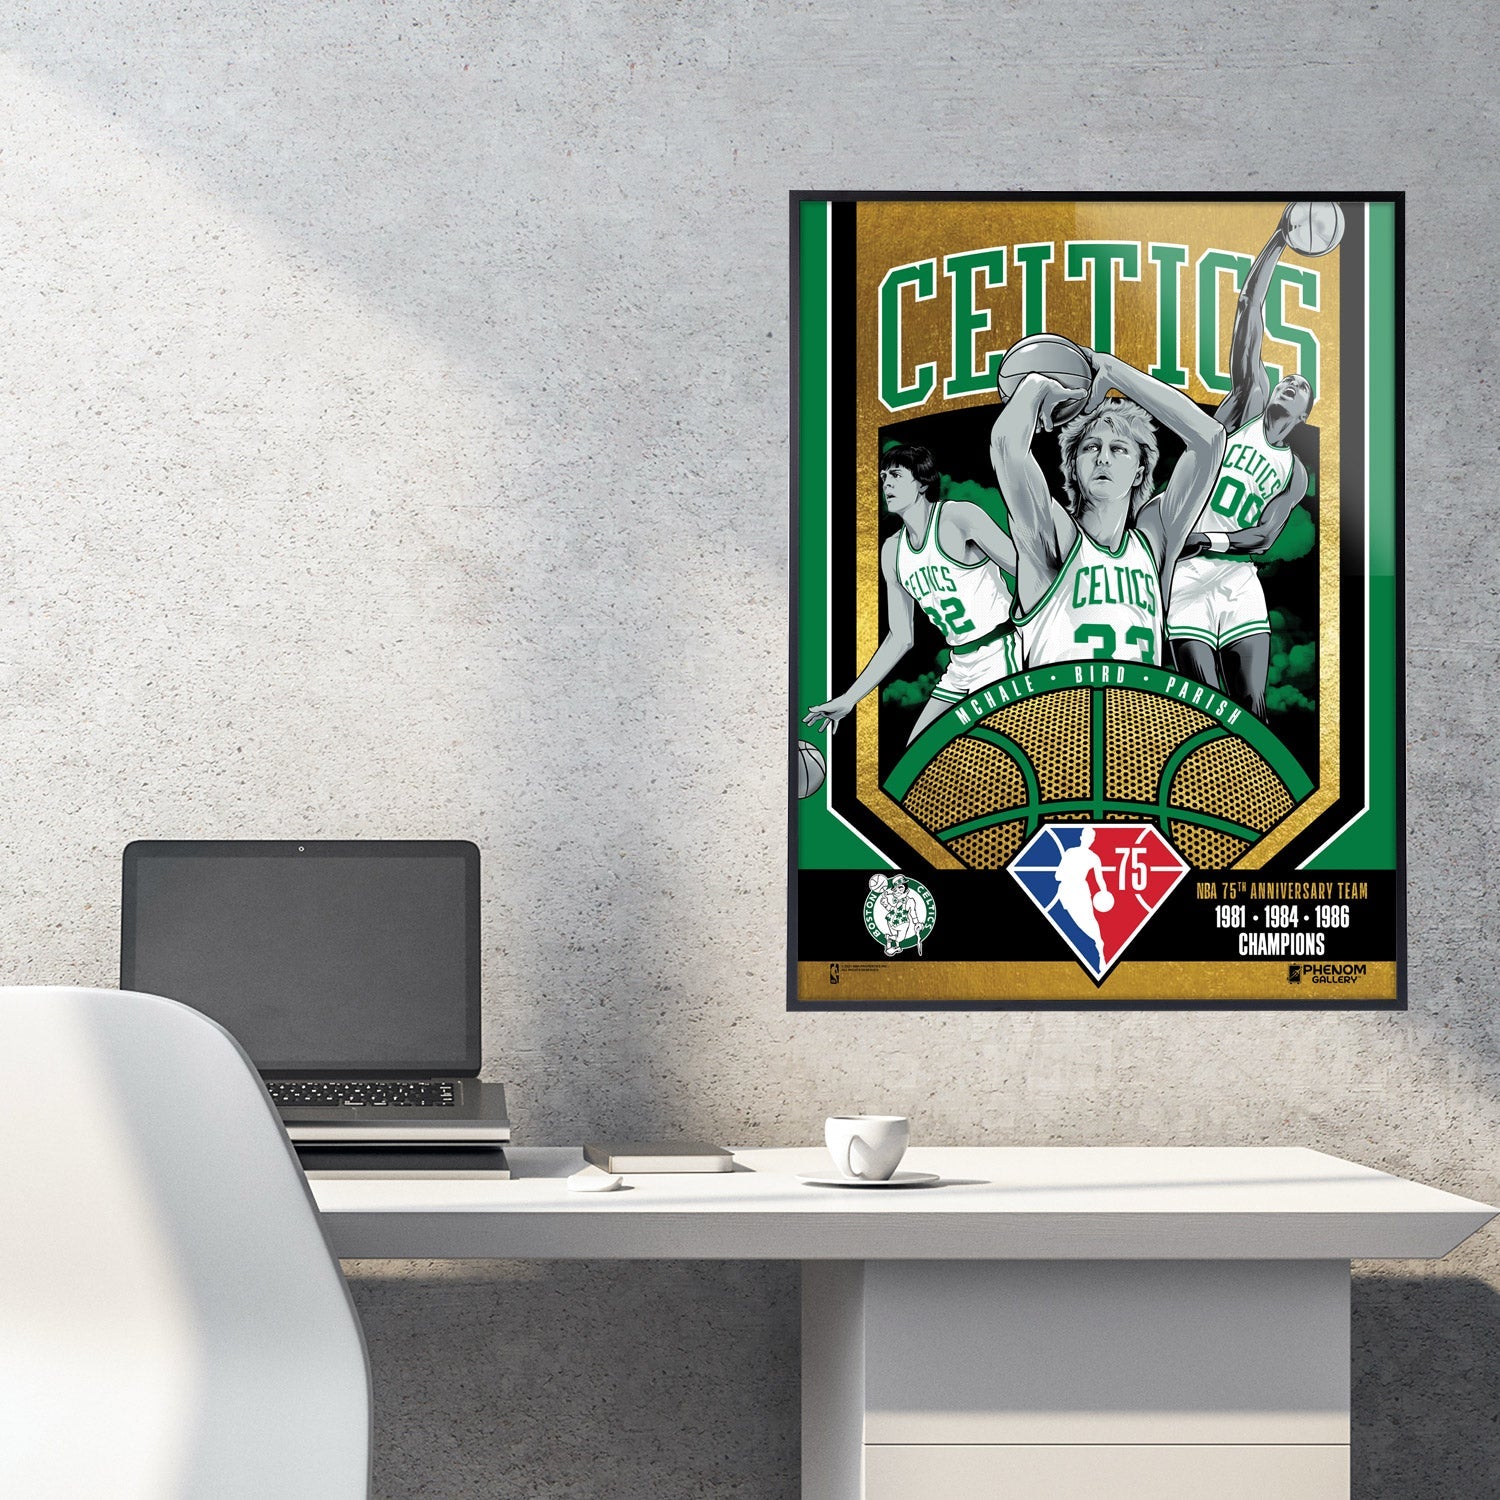 Boston Celtics 75th Anniversary 80's Champs 18x24 Gold Foil